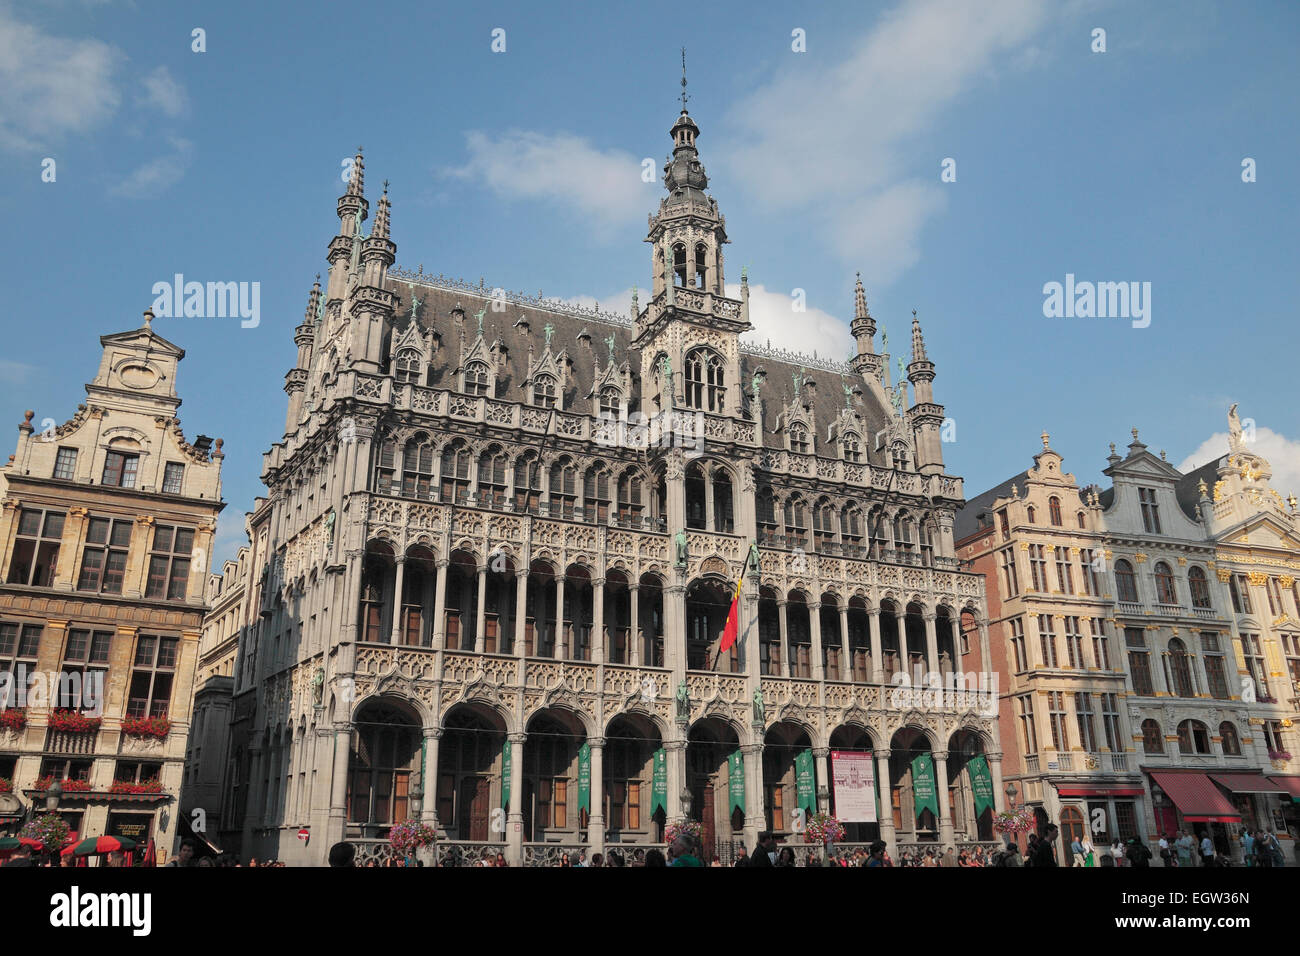 Ayuntamiento de Bruselas, el Hotel de Ville o el Hôtel de Ville de Bruxelles), Grote Markt (Grand Place), Bruselas, Bélgica Foto de stock